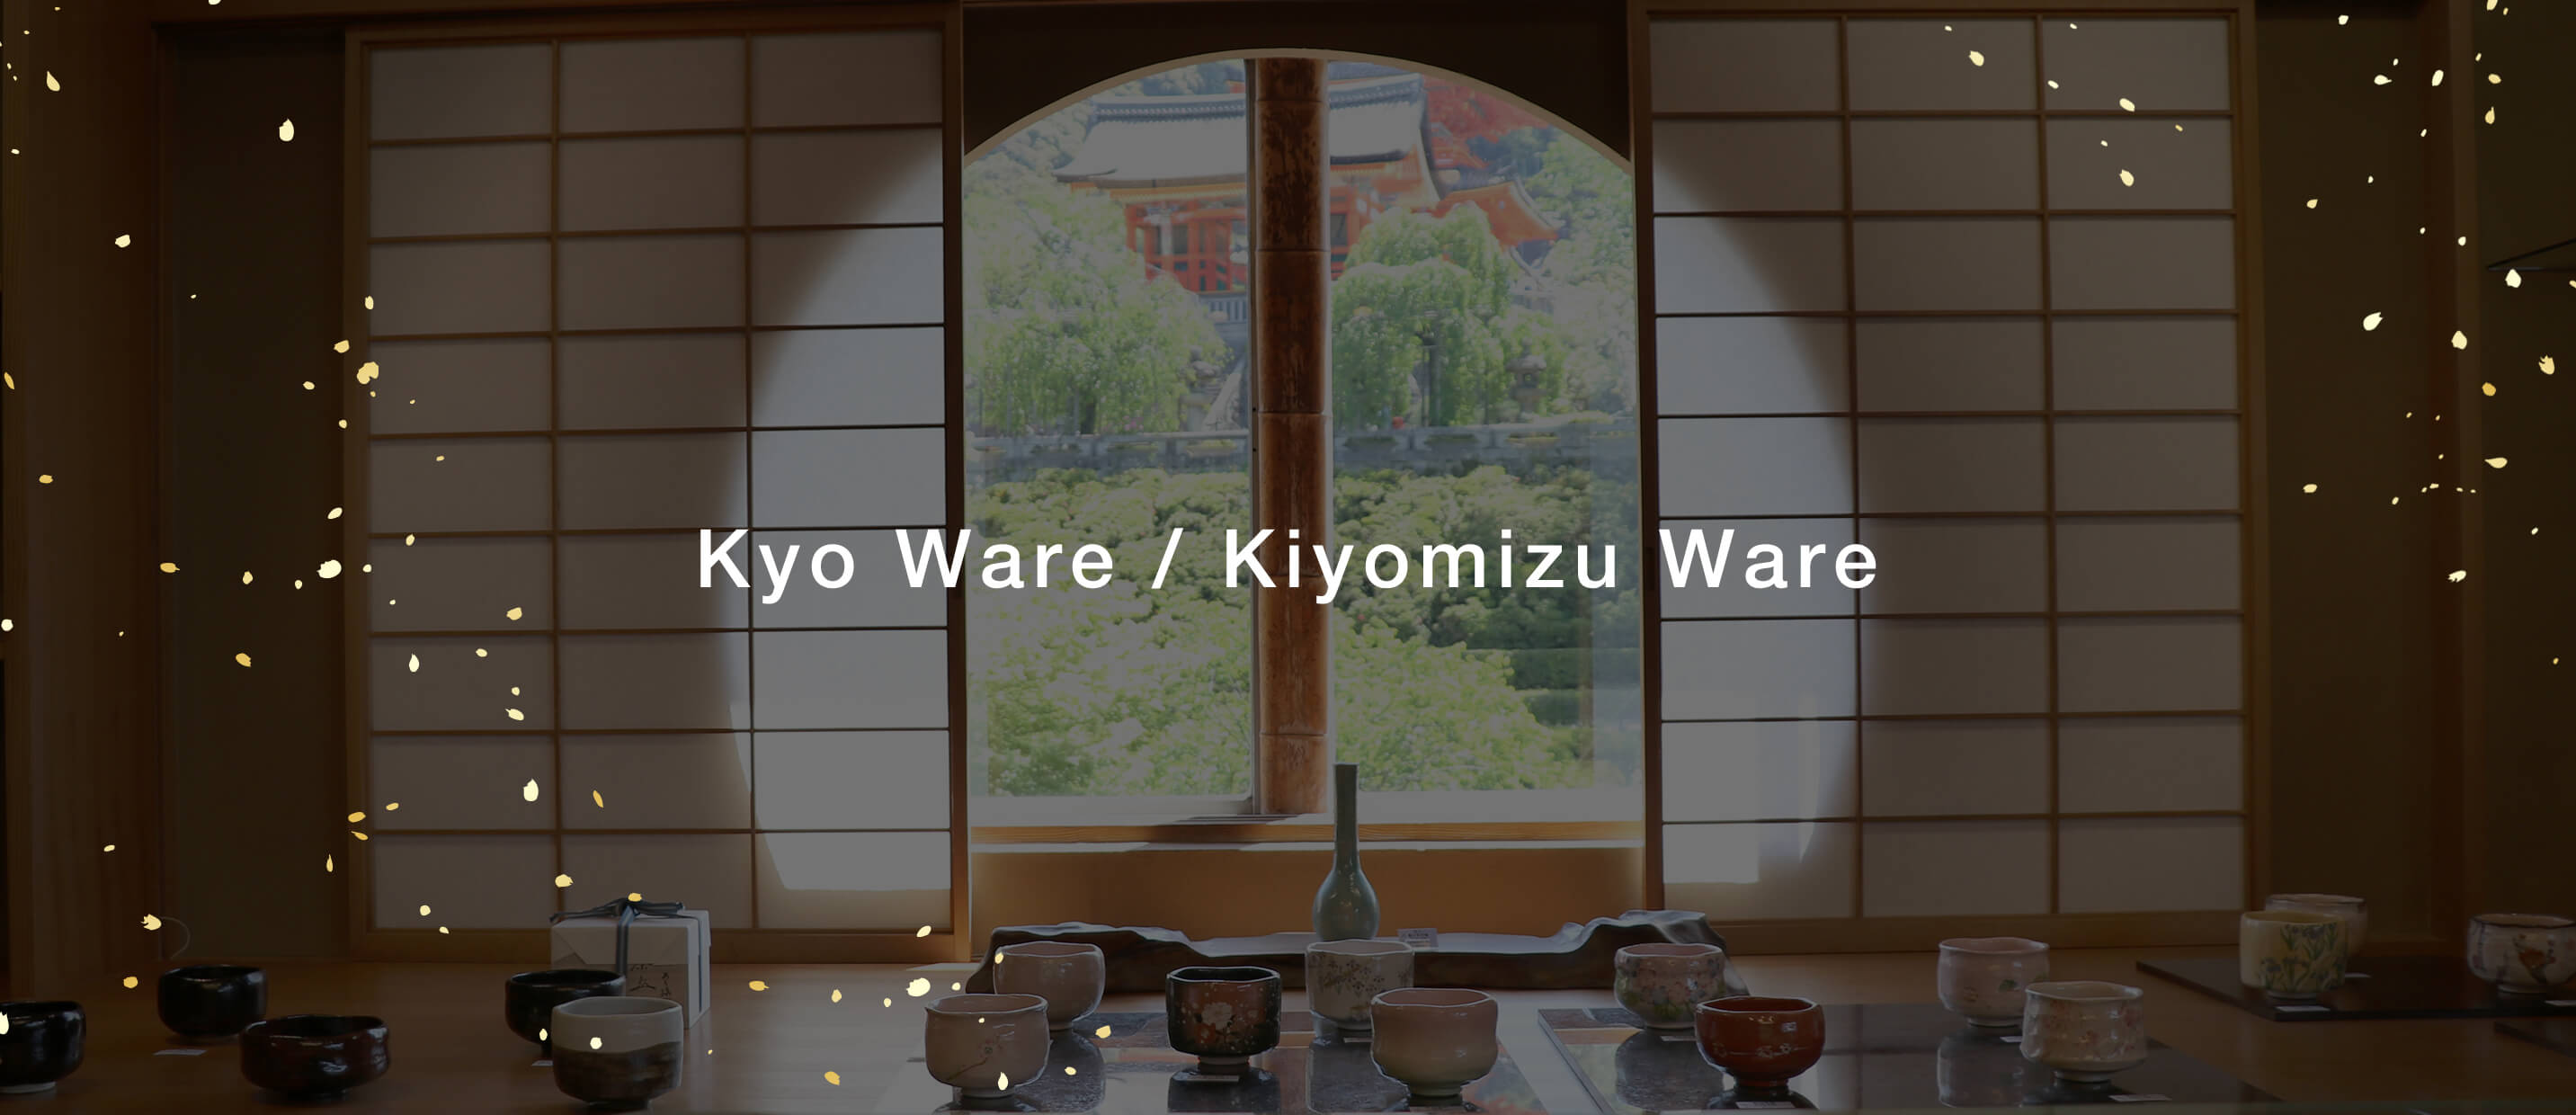 Kyo Ware / Kiyomizu Ware